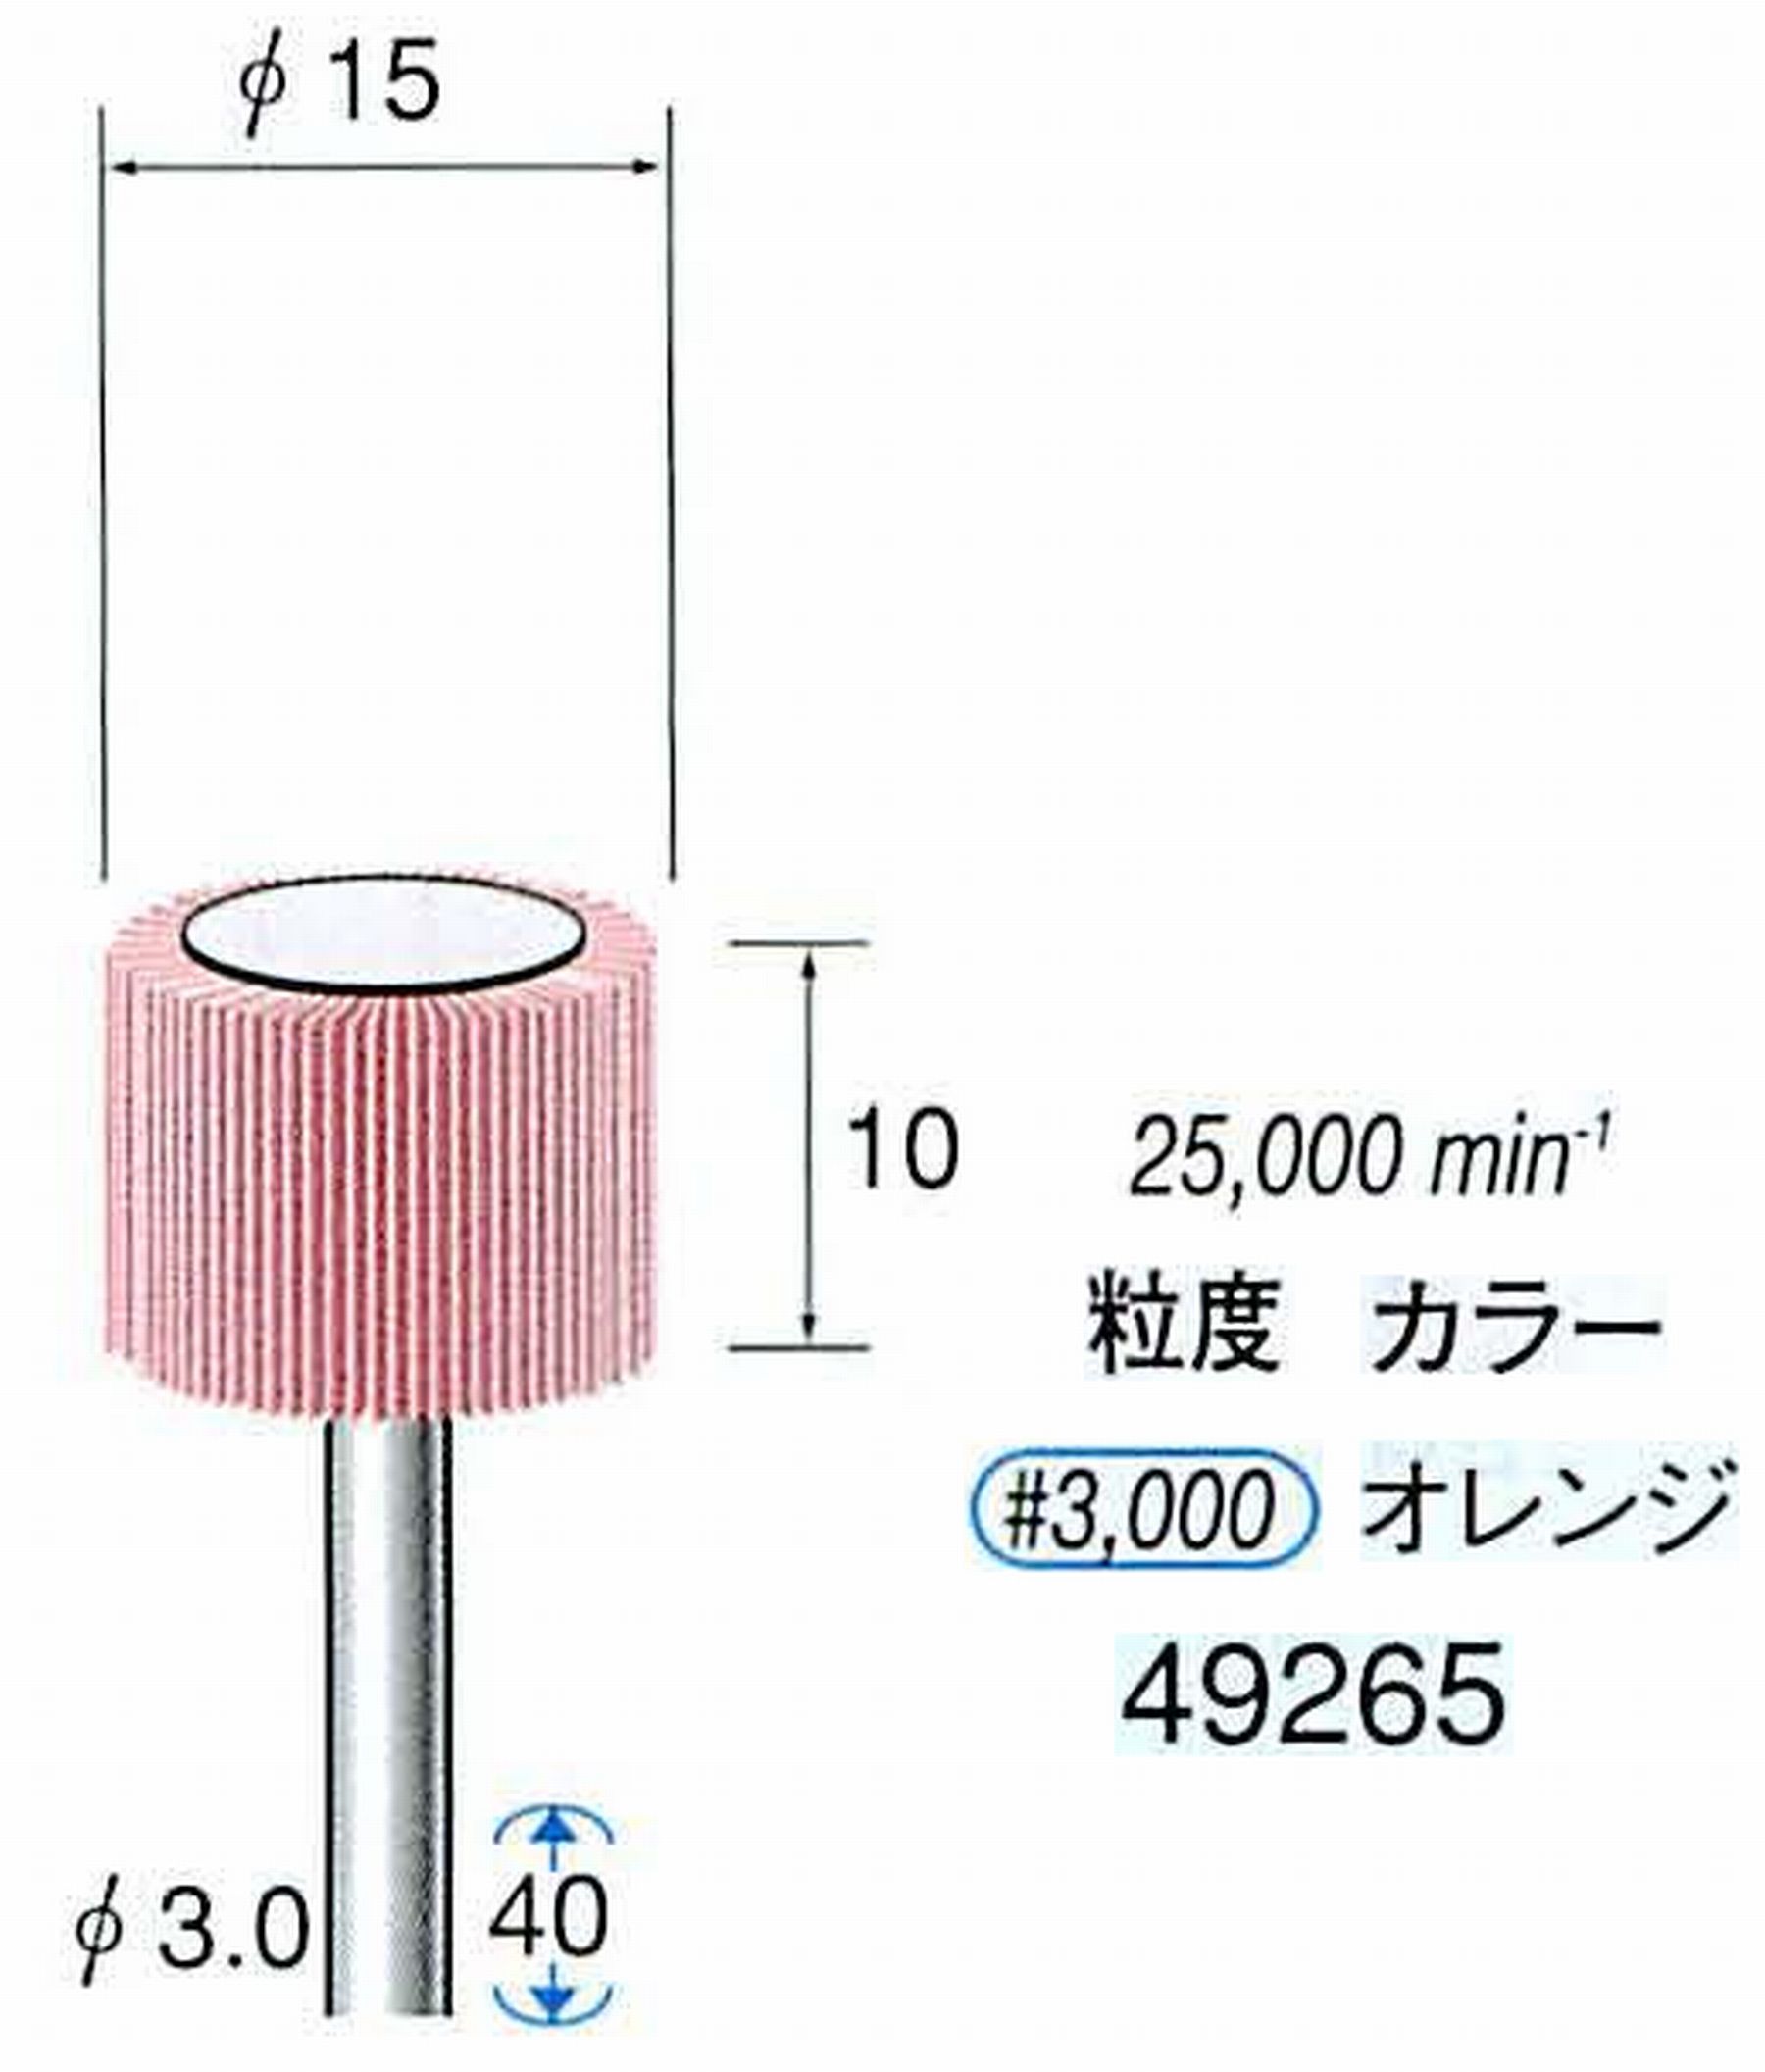 ナカニシ/NAKANISHI ファイン フラップサンダー 軸径(シャンク)φ3.0mm 49265